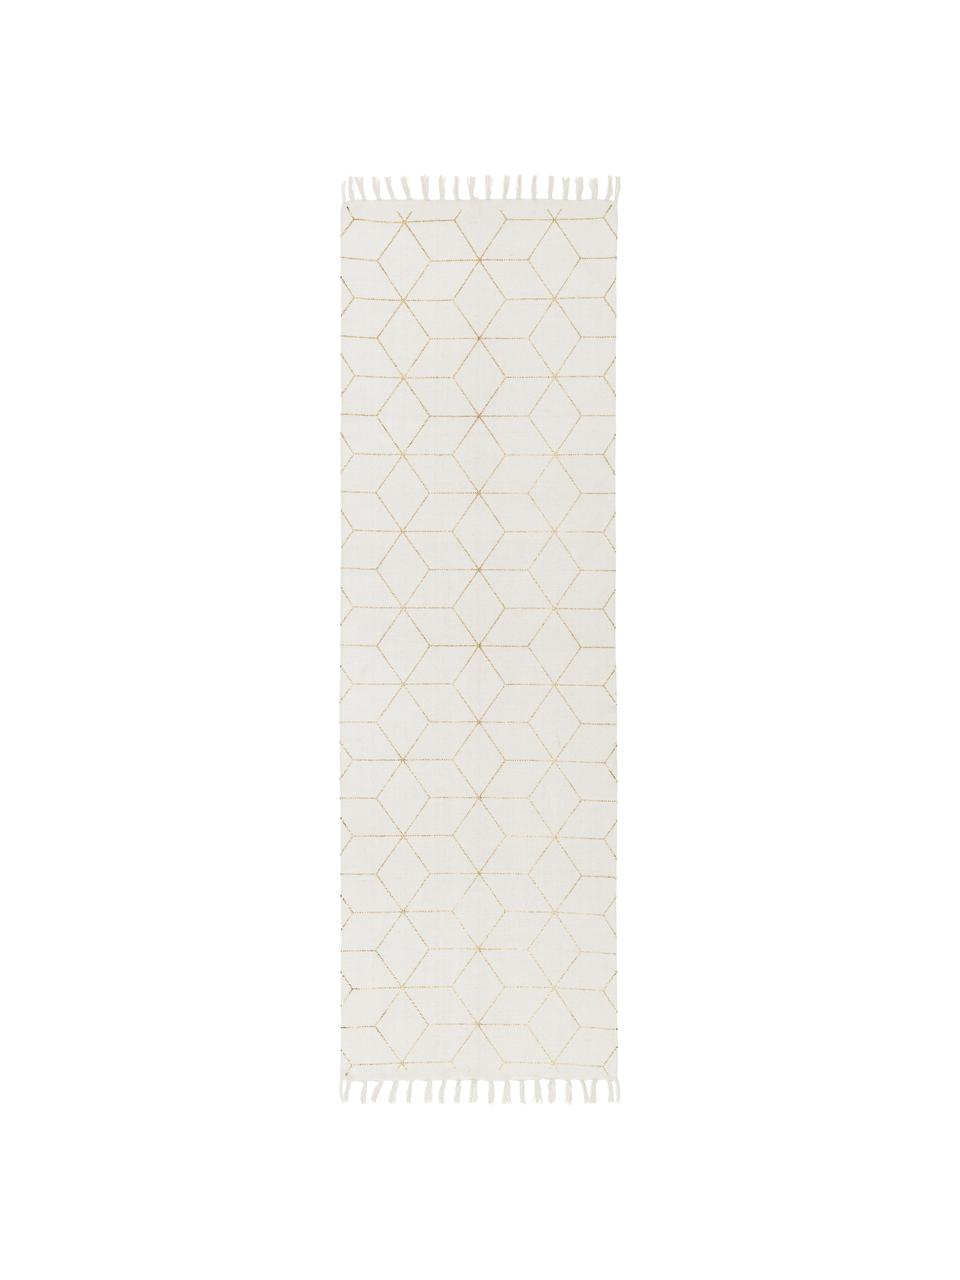 Tkany na płasko chodnik z bawełny Yena, Beżowy, złoty, S 80 x D 250 cm